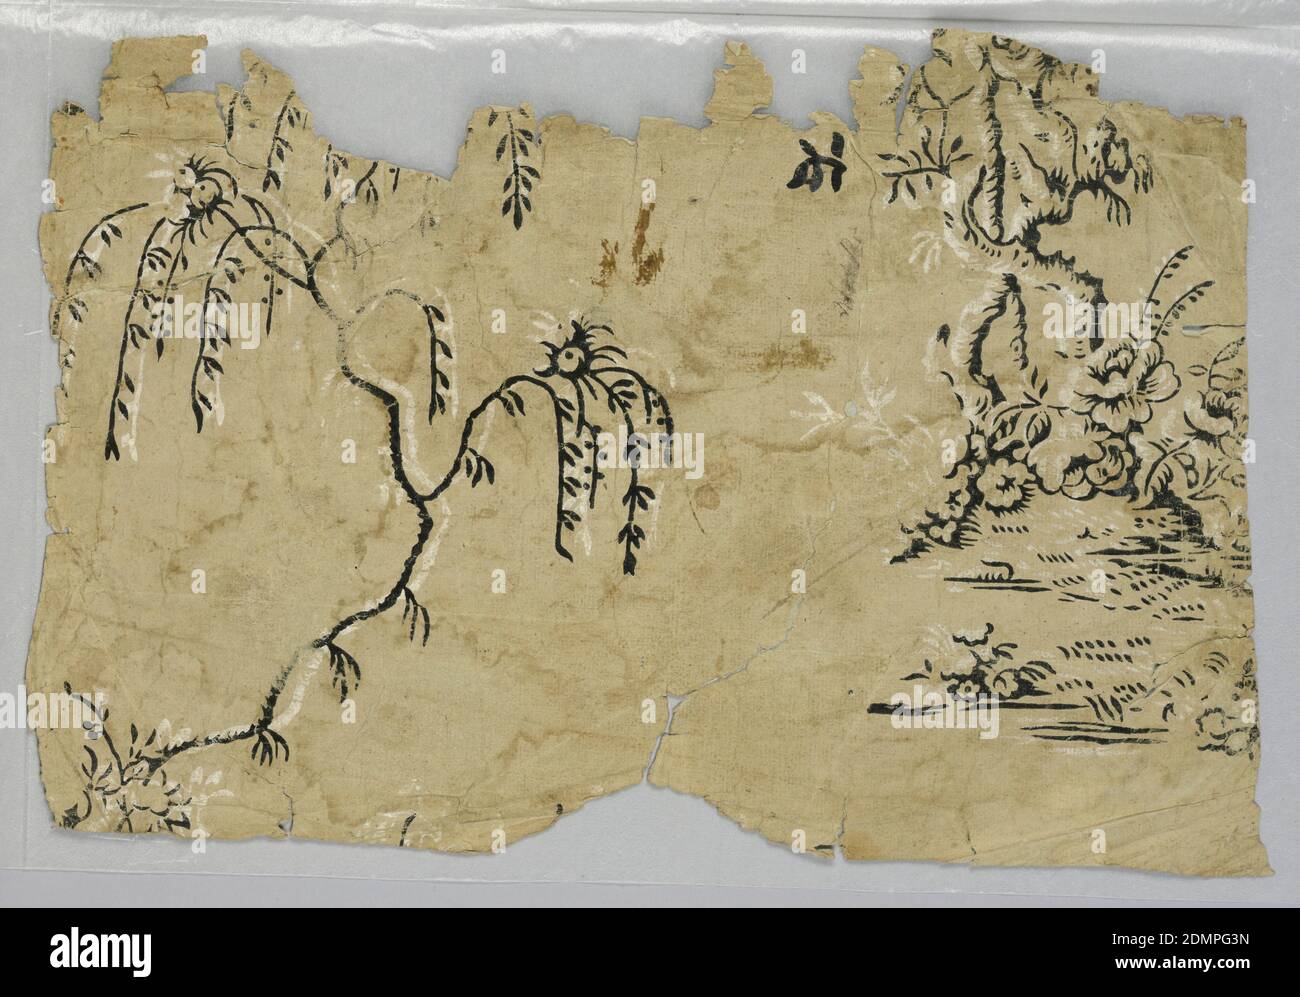 Seitenwand - Fragment, Blockdruck, ungeerdetes Papier, Design von Baum und Blumen in schwarz und weiß, ca. 1800, Wallcoverings, Sidewall - Fragment Stockfoto